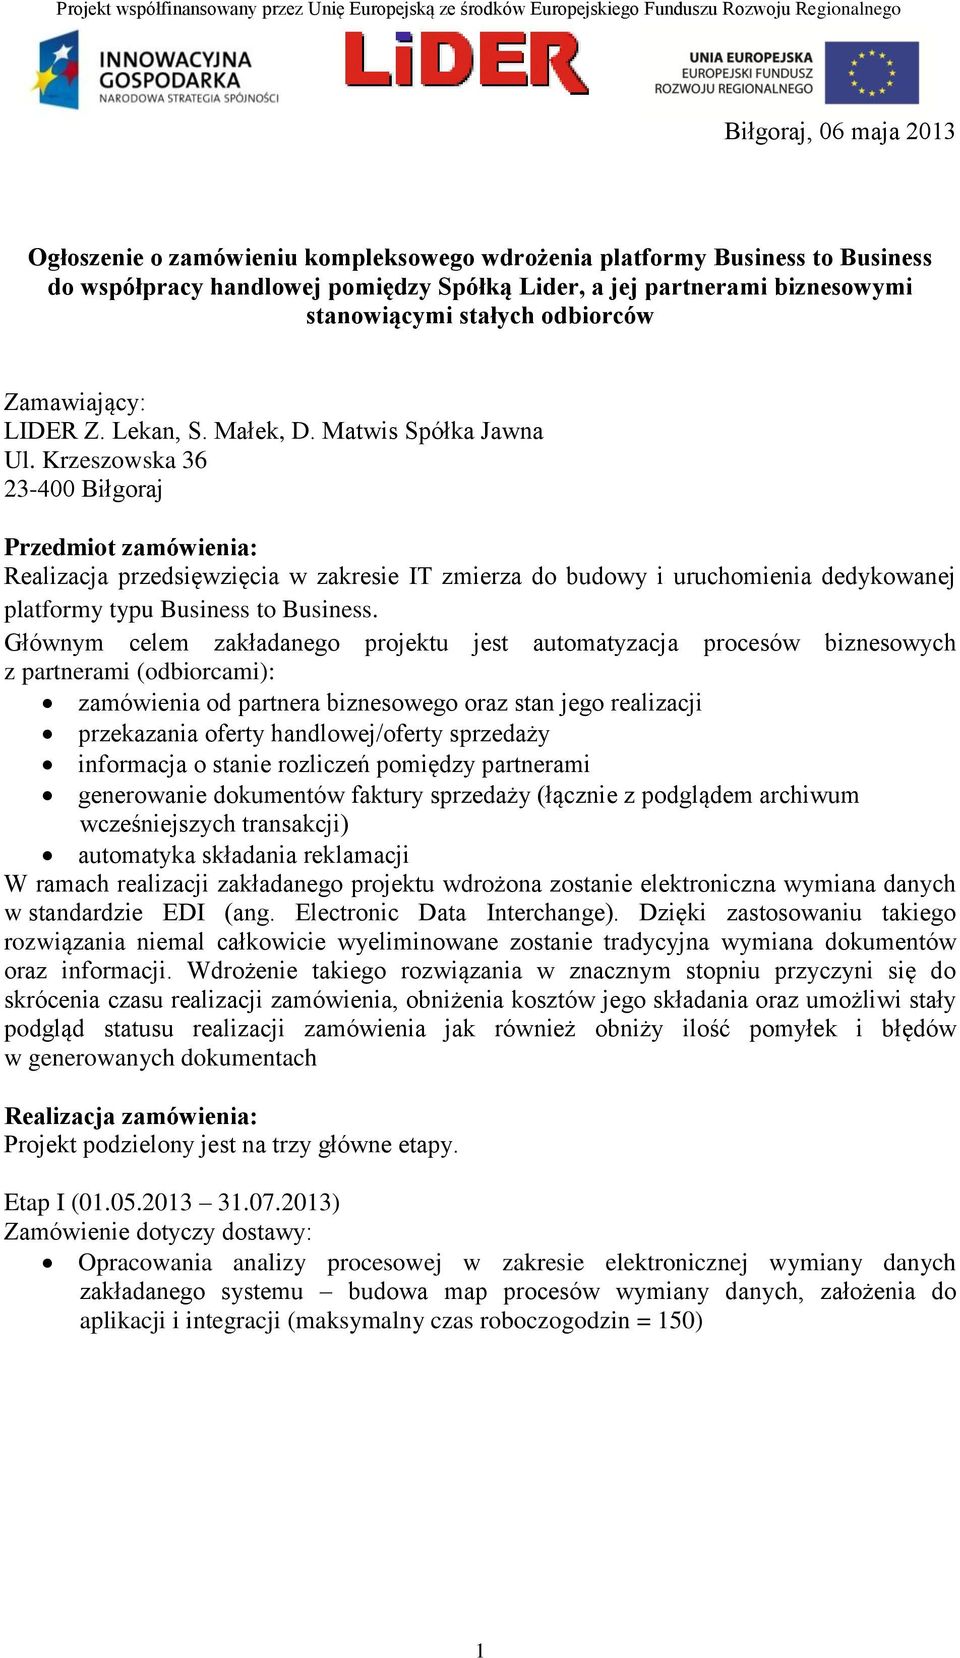 Krzeszowska 36 23-400 Biłgoraj Przedmiot zamówienia: Realizacja przedsięwzięcia w zakresie IT zmierza do budowy i uruchomienia dedykowanej platformy typu Business to Business.